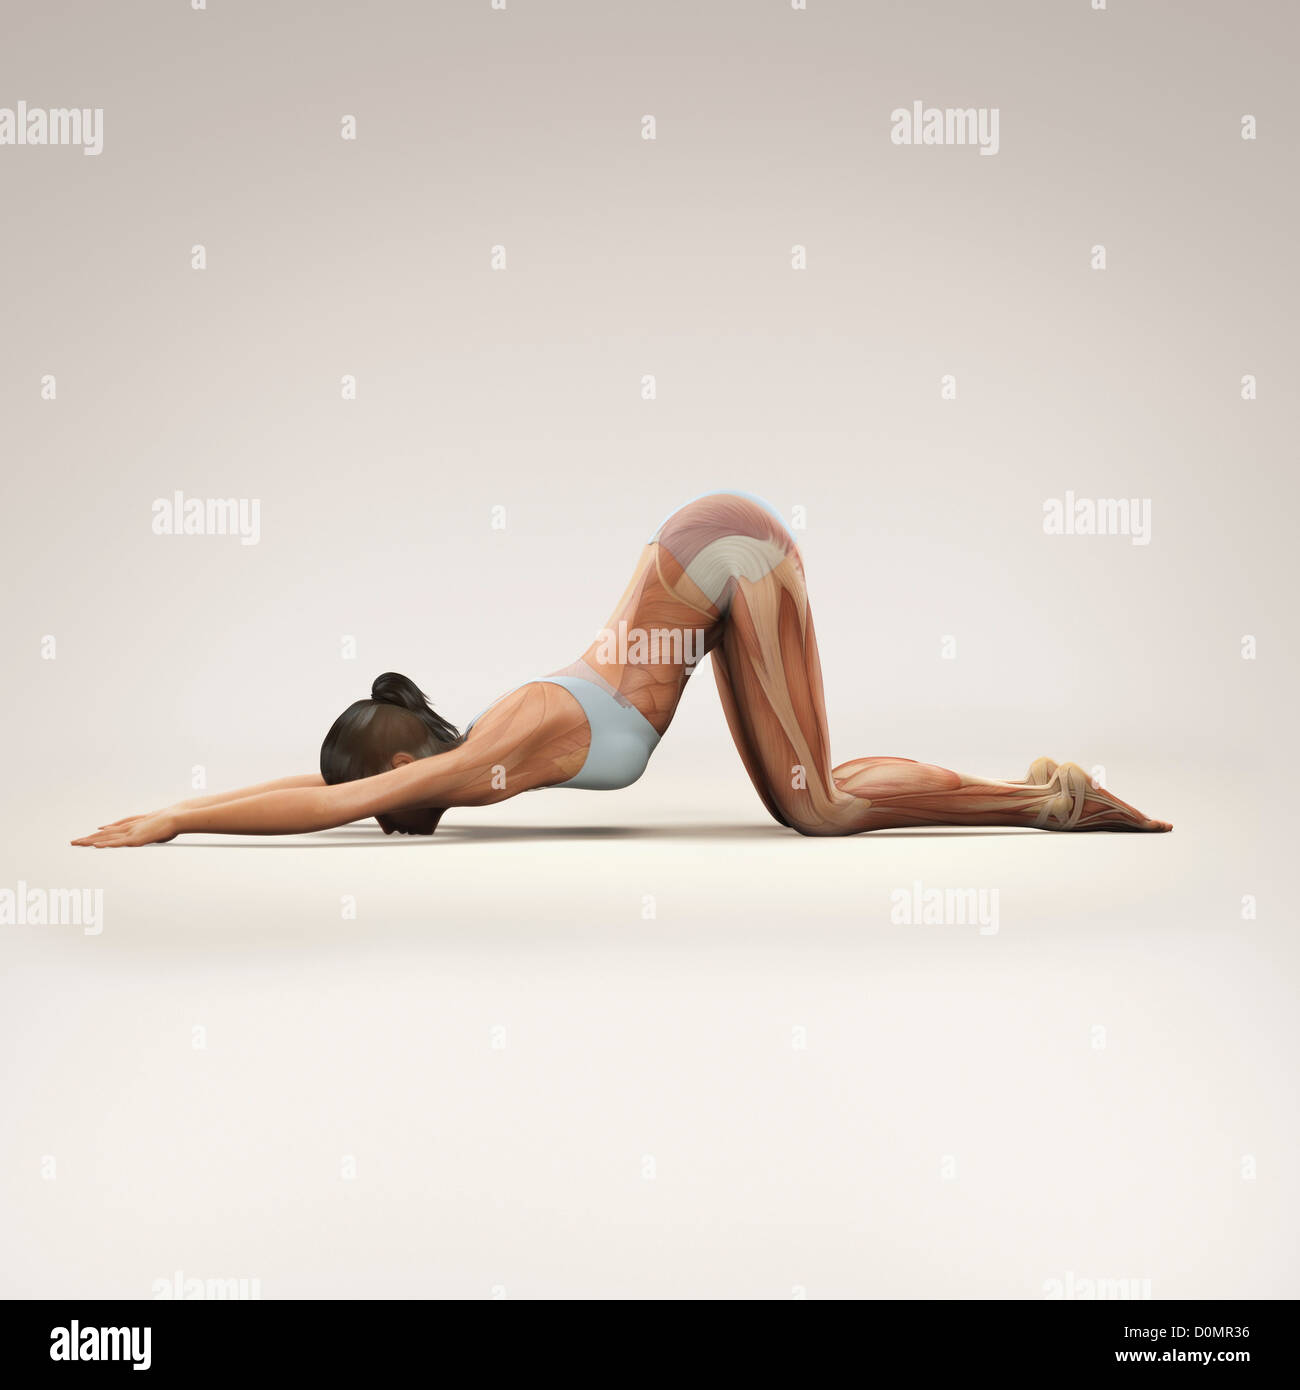 Muskulatur über den weiblichen Körper in erweiterten Welpen Pose zeigt Aktivität bestimmter Muskelgruppen in diesem bestimmten Yoga geschichtet Stockfoto